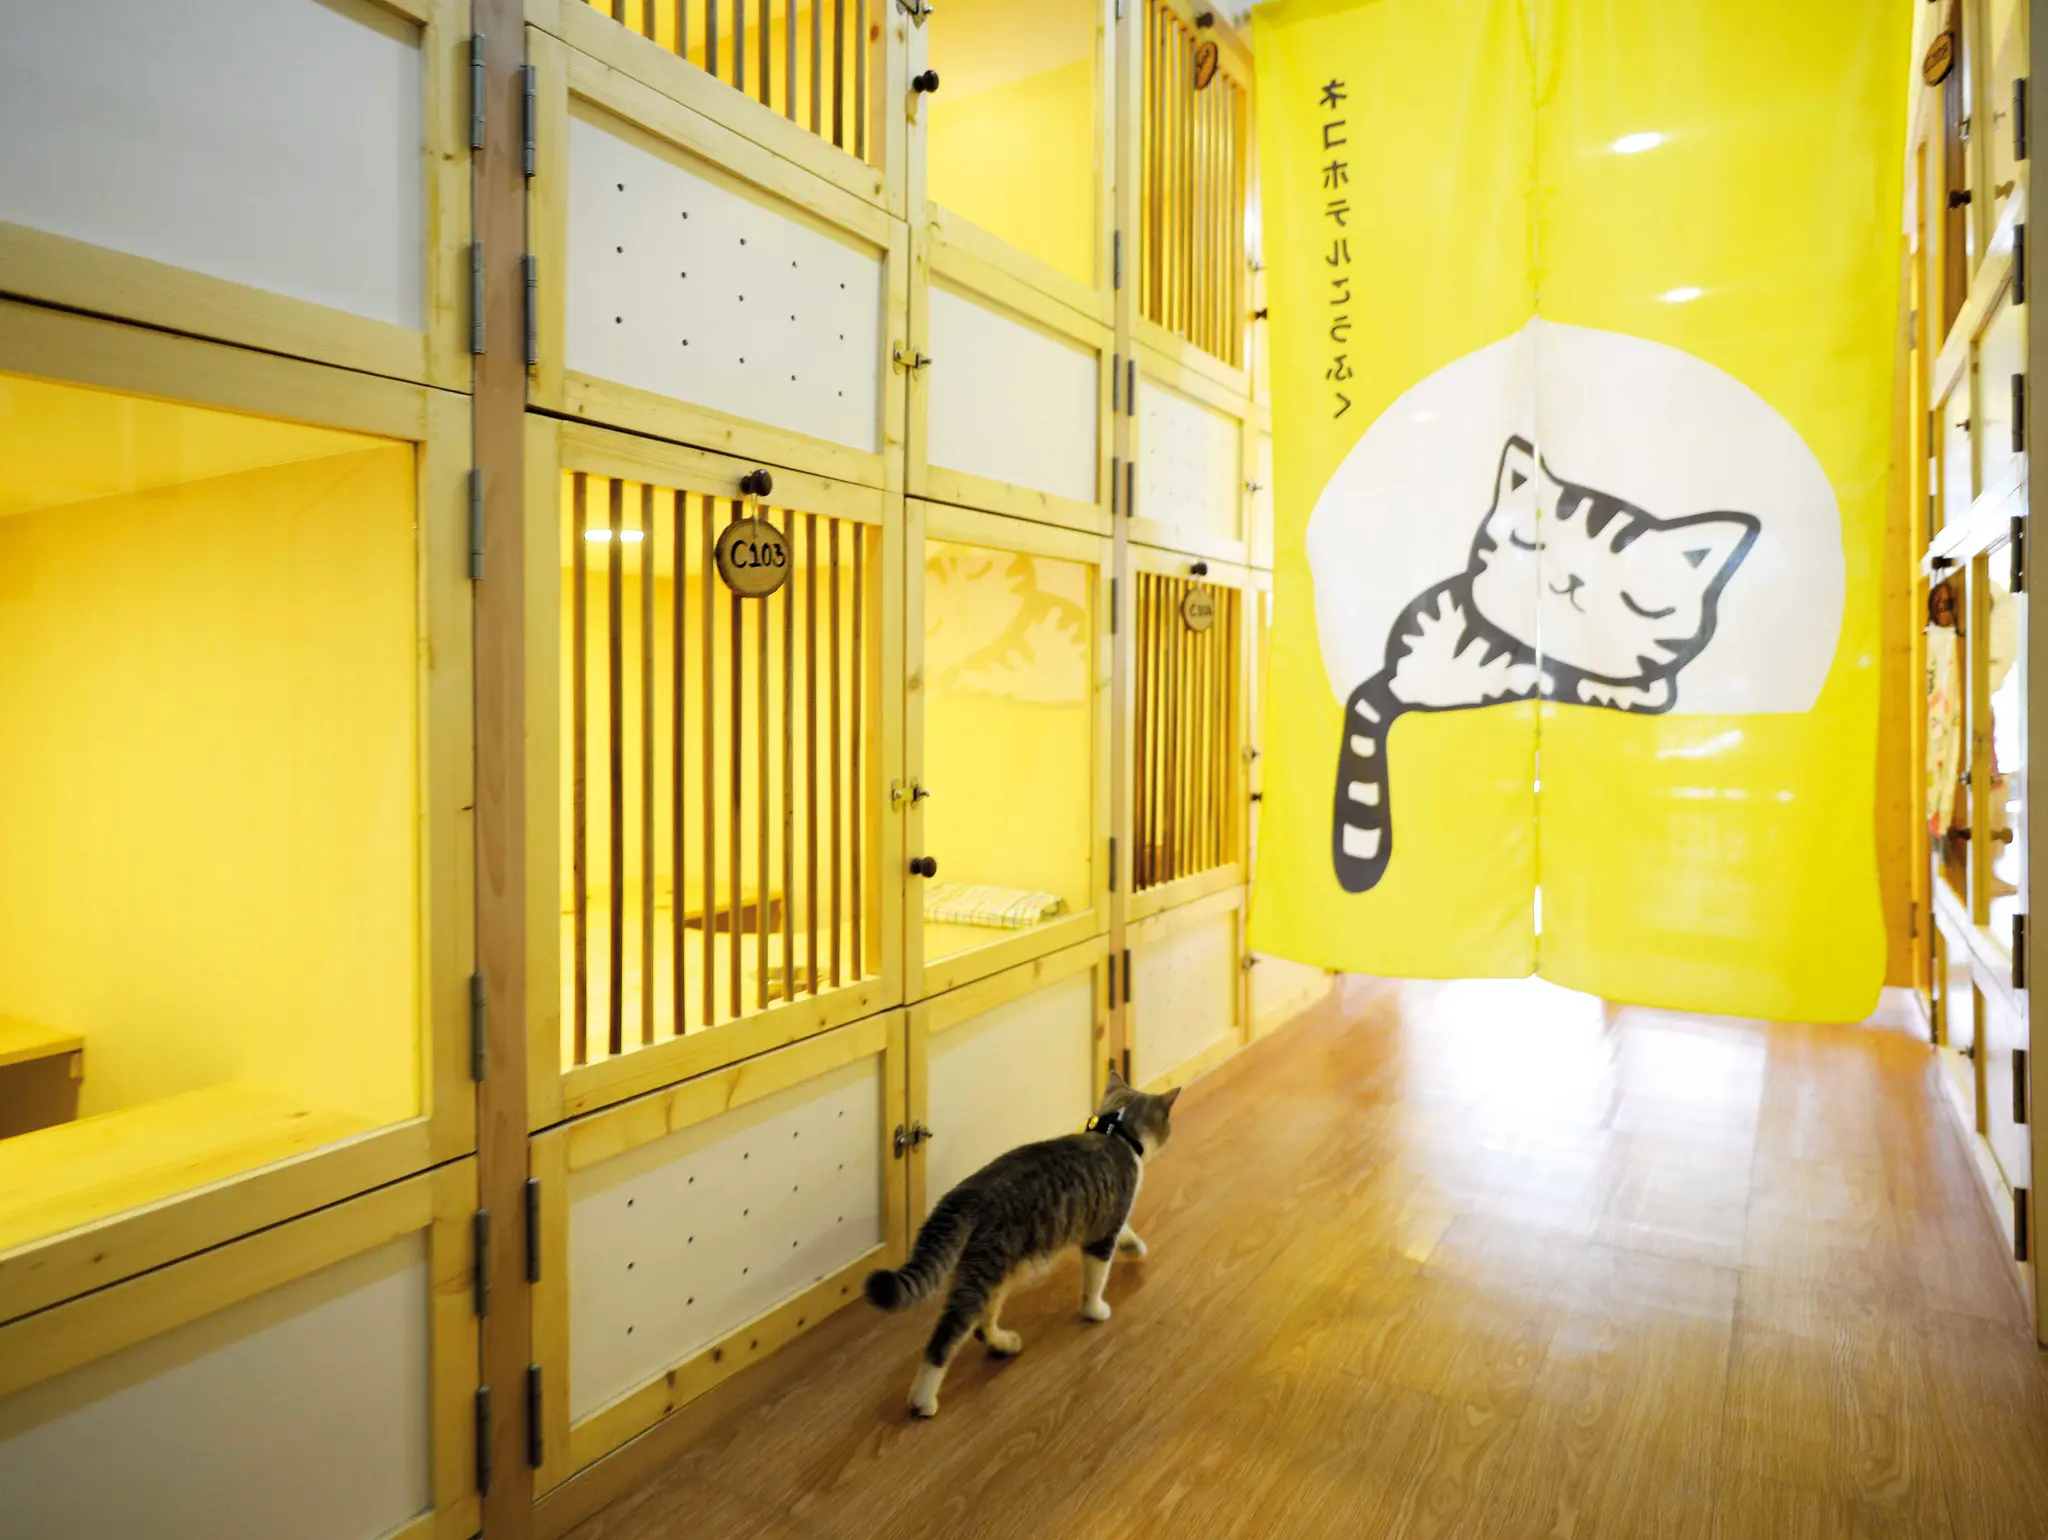 470 Kofuku Cat Hotel โรงแรมที่ทั้งคนและแมวมีความรัก ความสุข ความผูกพัน